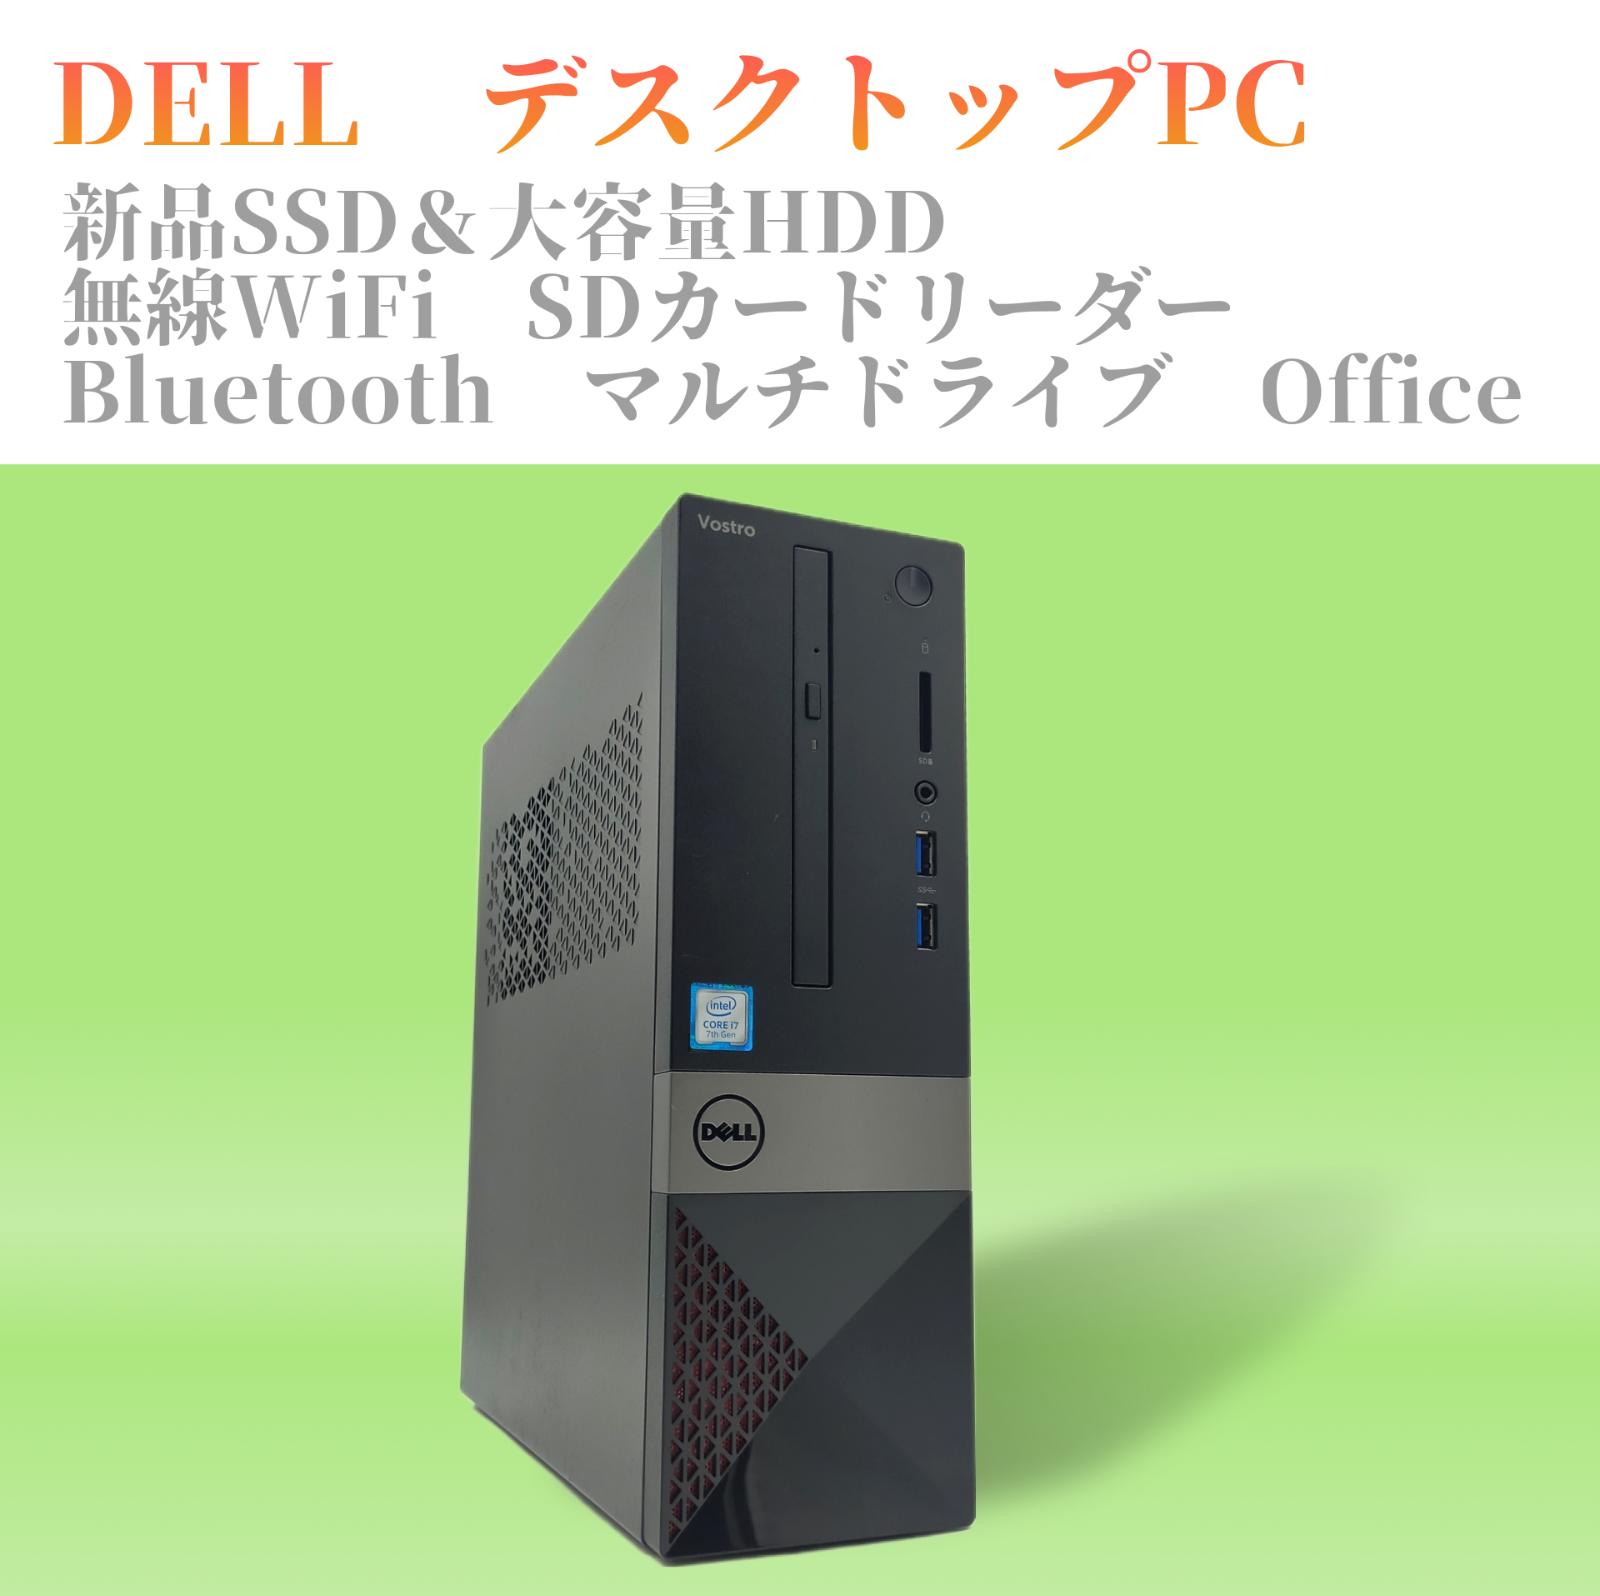 お値打ち品の-DELL - デスクトップPC デル ビジネスPC Office WiFi SSD